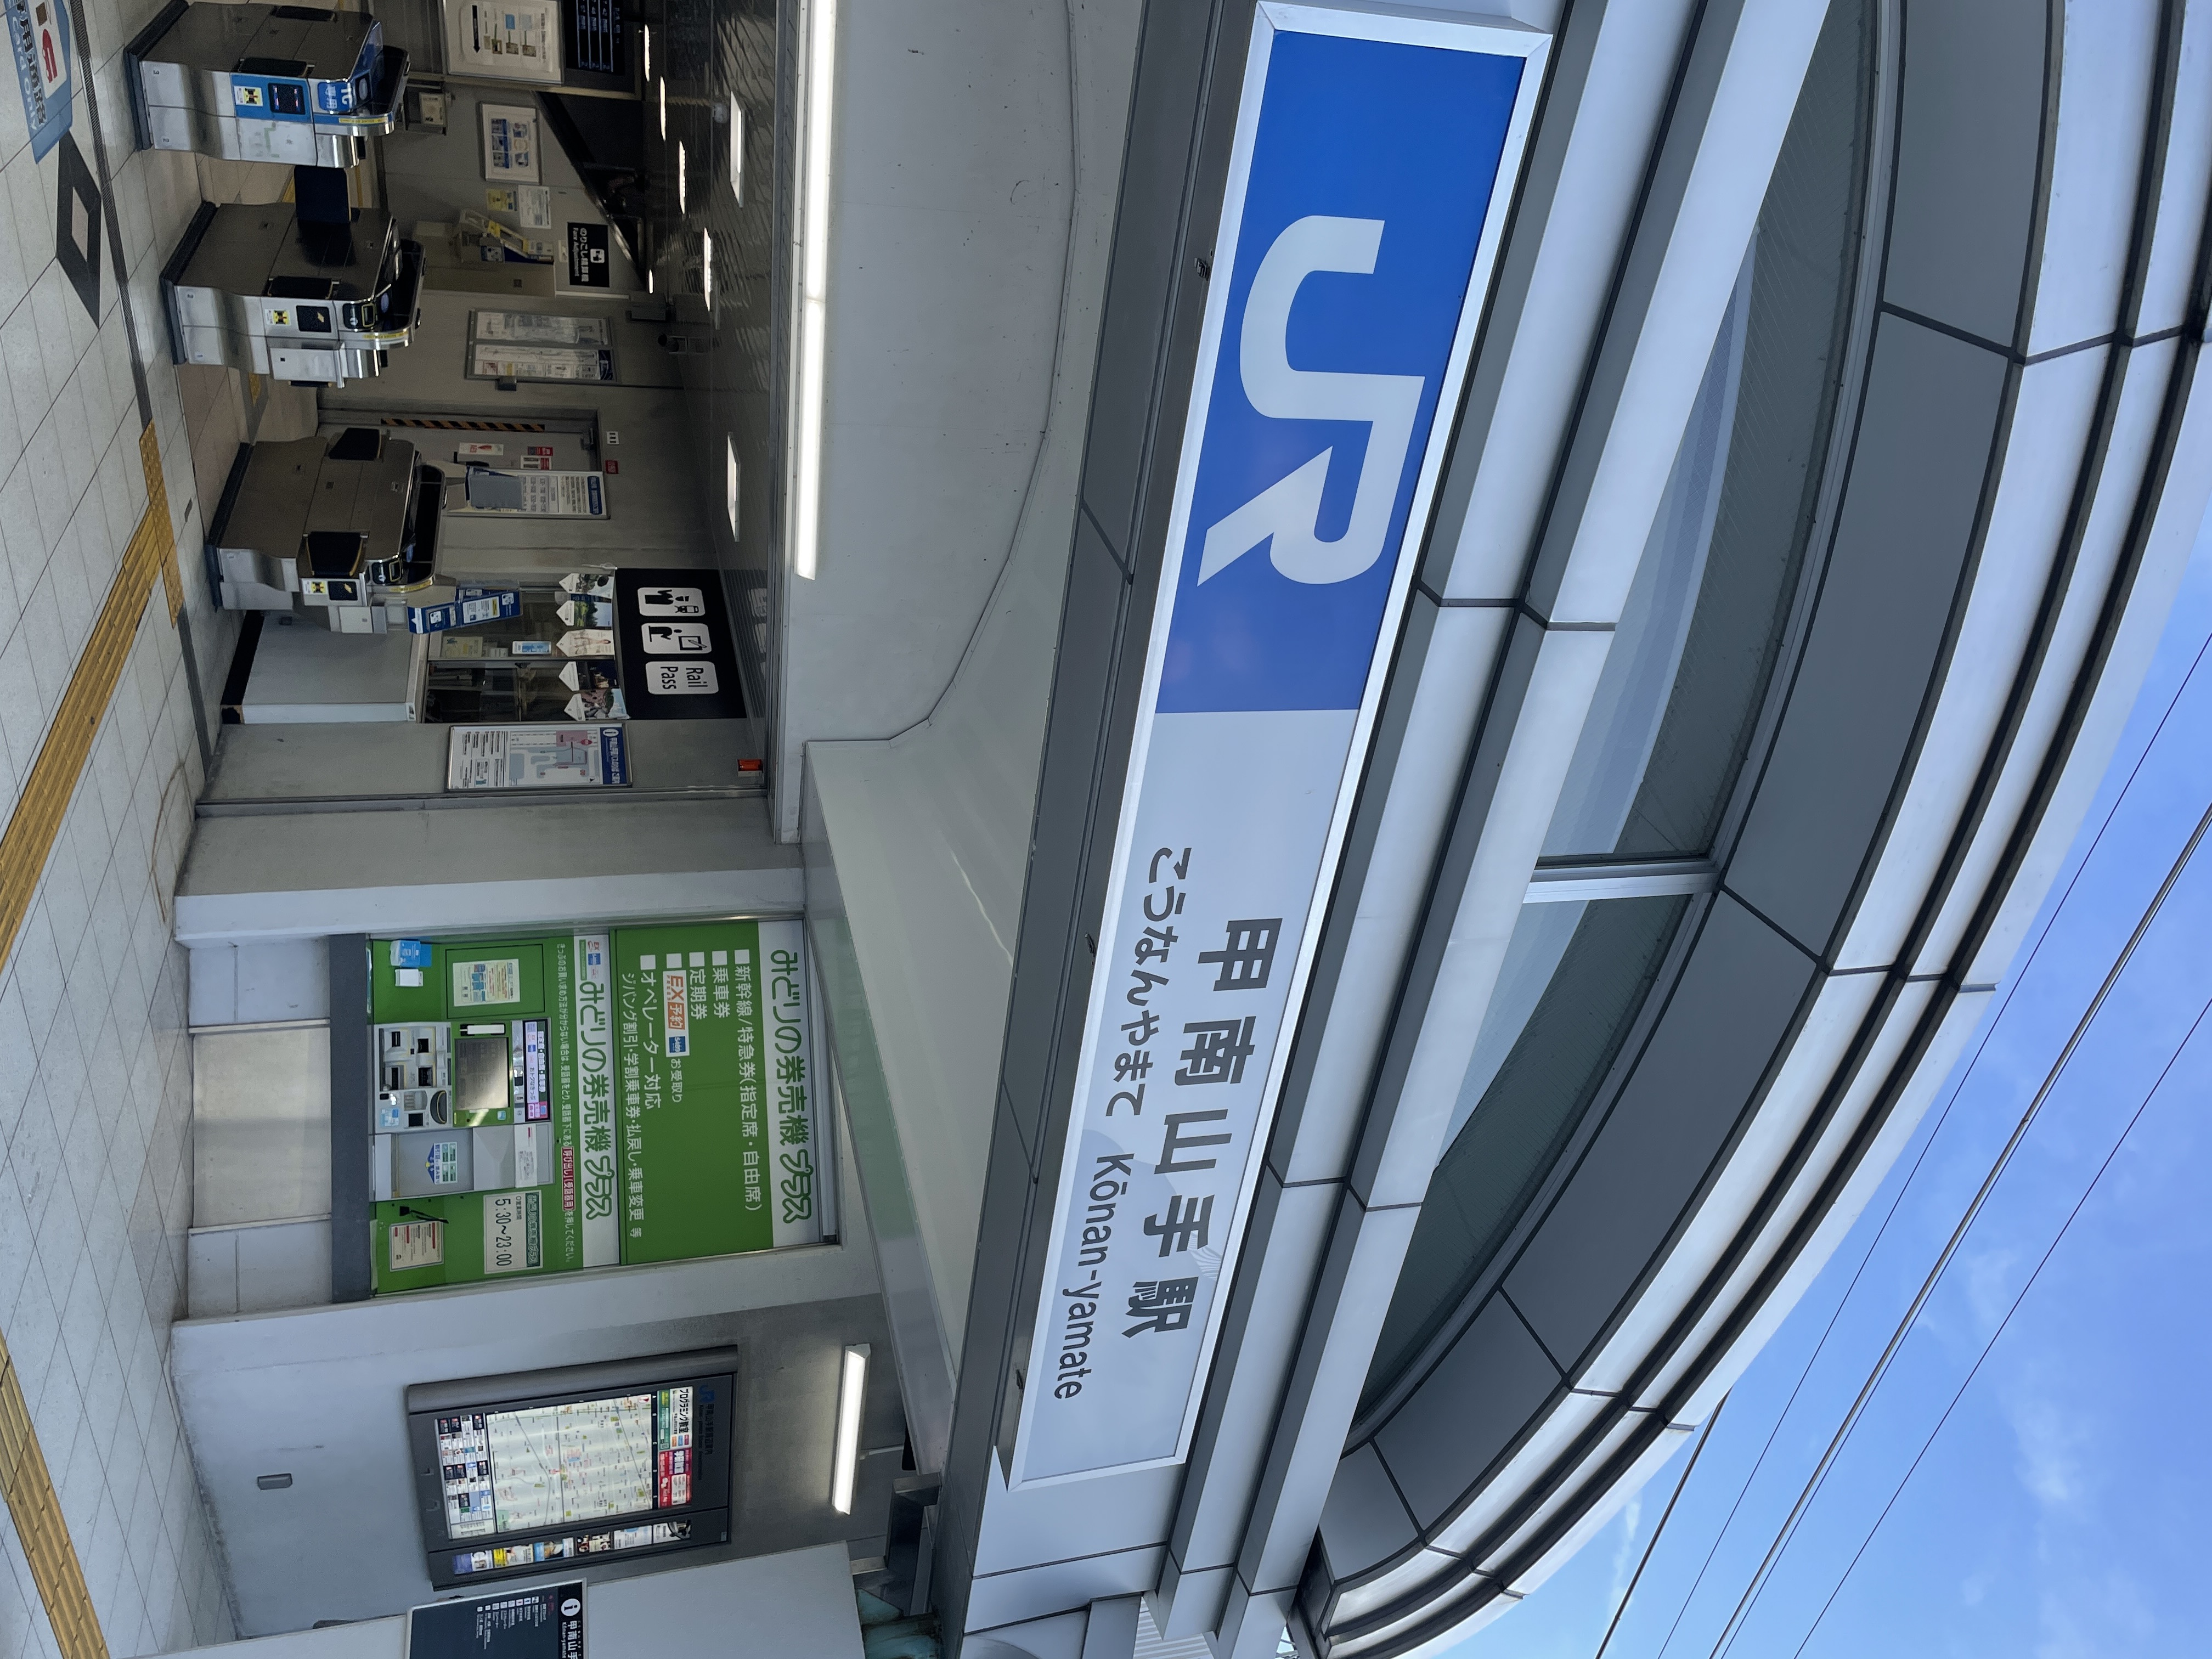 最寄りJR神戸線「甲南山手」駅<br />
<br />
駅庁舎に附属してセブンイレブンさんがあり、<br />
山手幹線沿いまで出るとファミリーマートさんがございます。<br />
駅前物件だとコンビニが充実していて何かと便利ですよね♪<br />
<br />
もちろんバス停、タクシーロータリーもありますので、<br />
交通機関の利便性を高めてくれています。